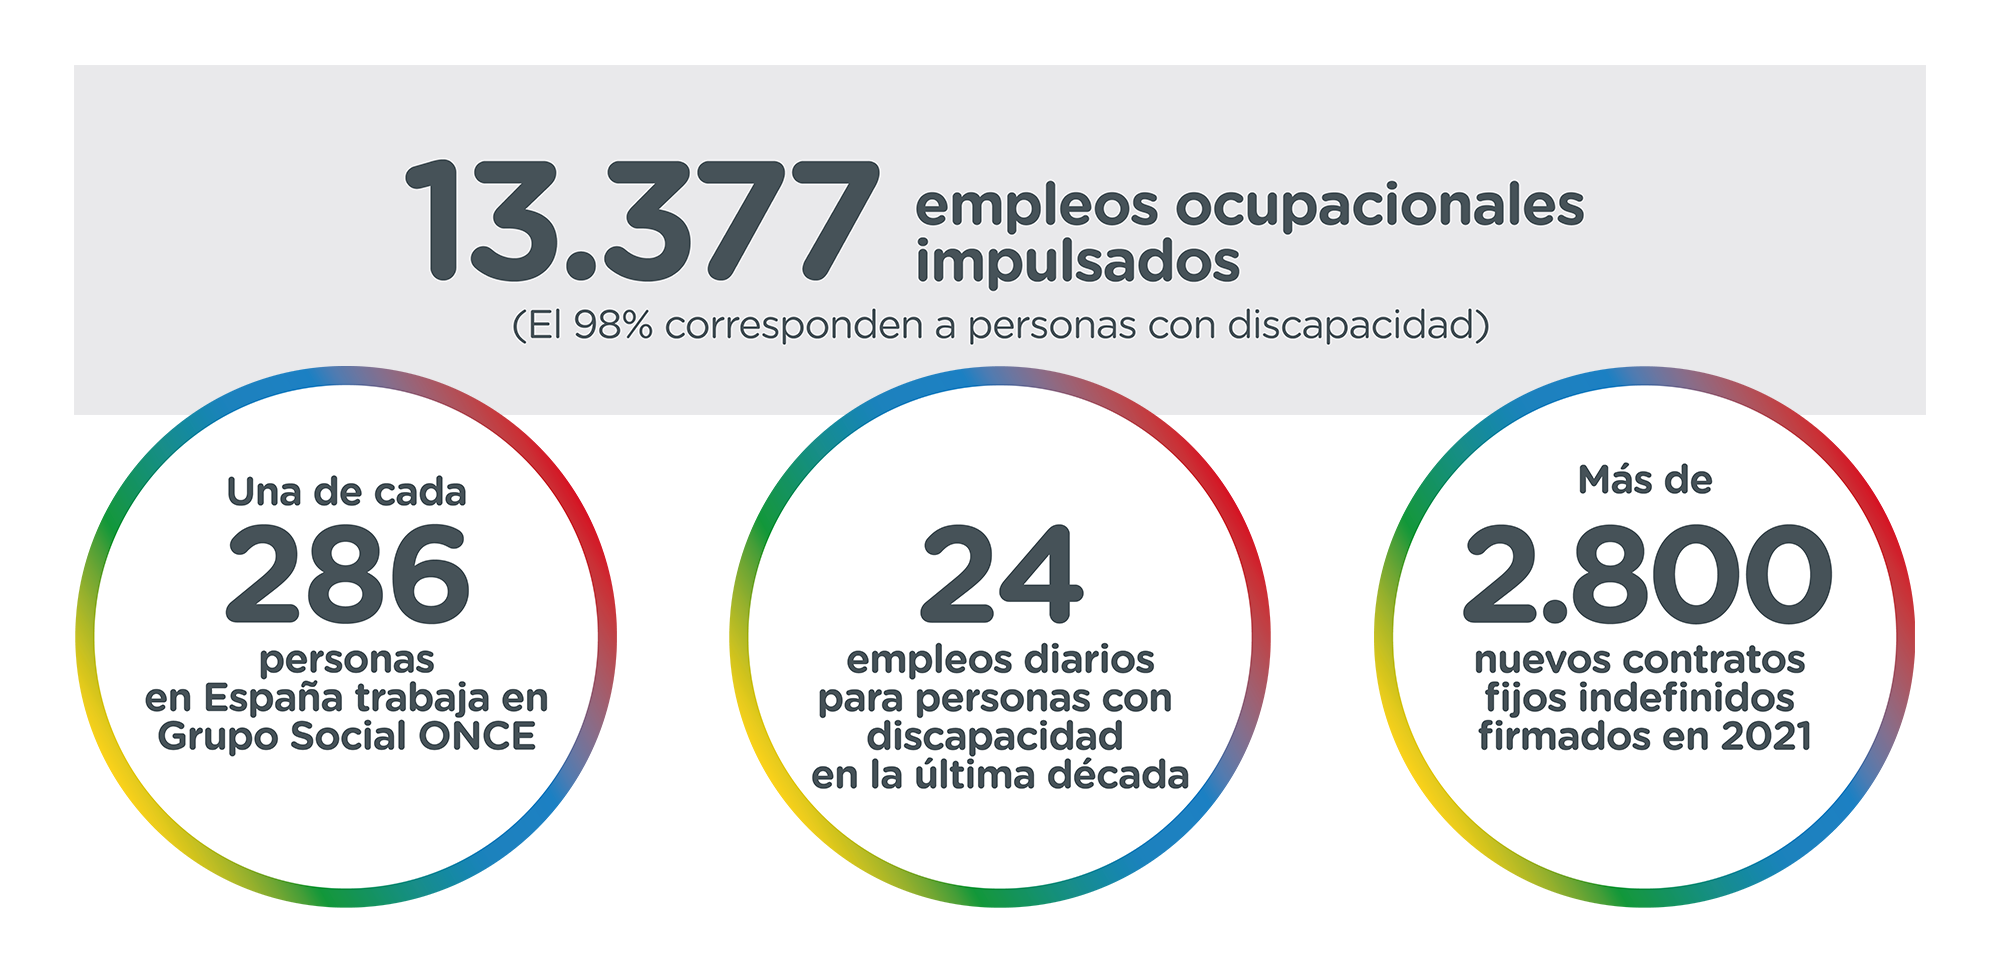 13.377 empleos impulsados en 2021 (el 98% corresponden a personas con discapacidad): Una de cada 286 personas en España trabaja en Grupo Social ONCE. Creamos 24 empleos diarios para personas con discapacidad en la última década. Más de 2.800 nuevos contratos indefinidos firmados en 2021.